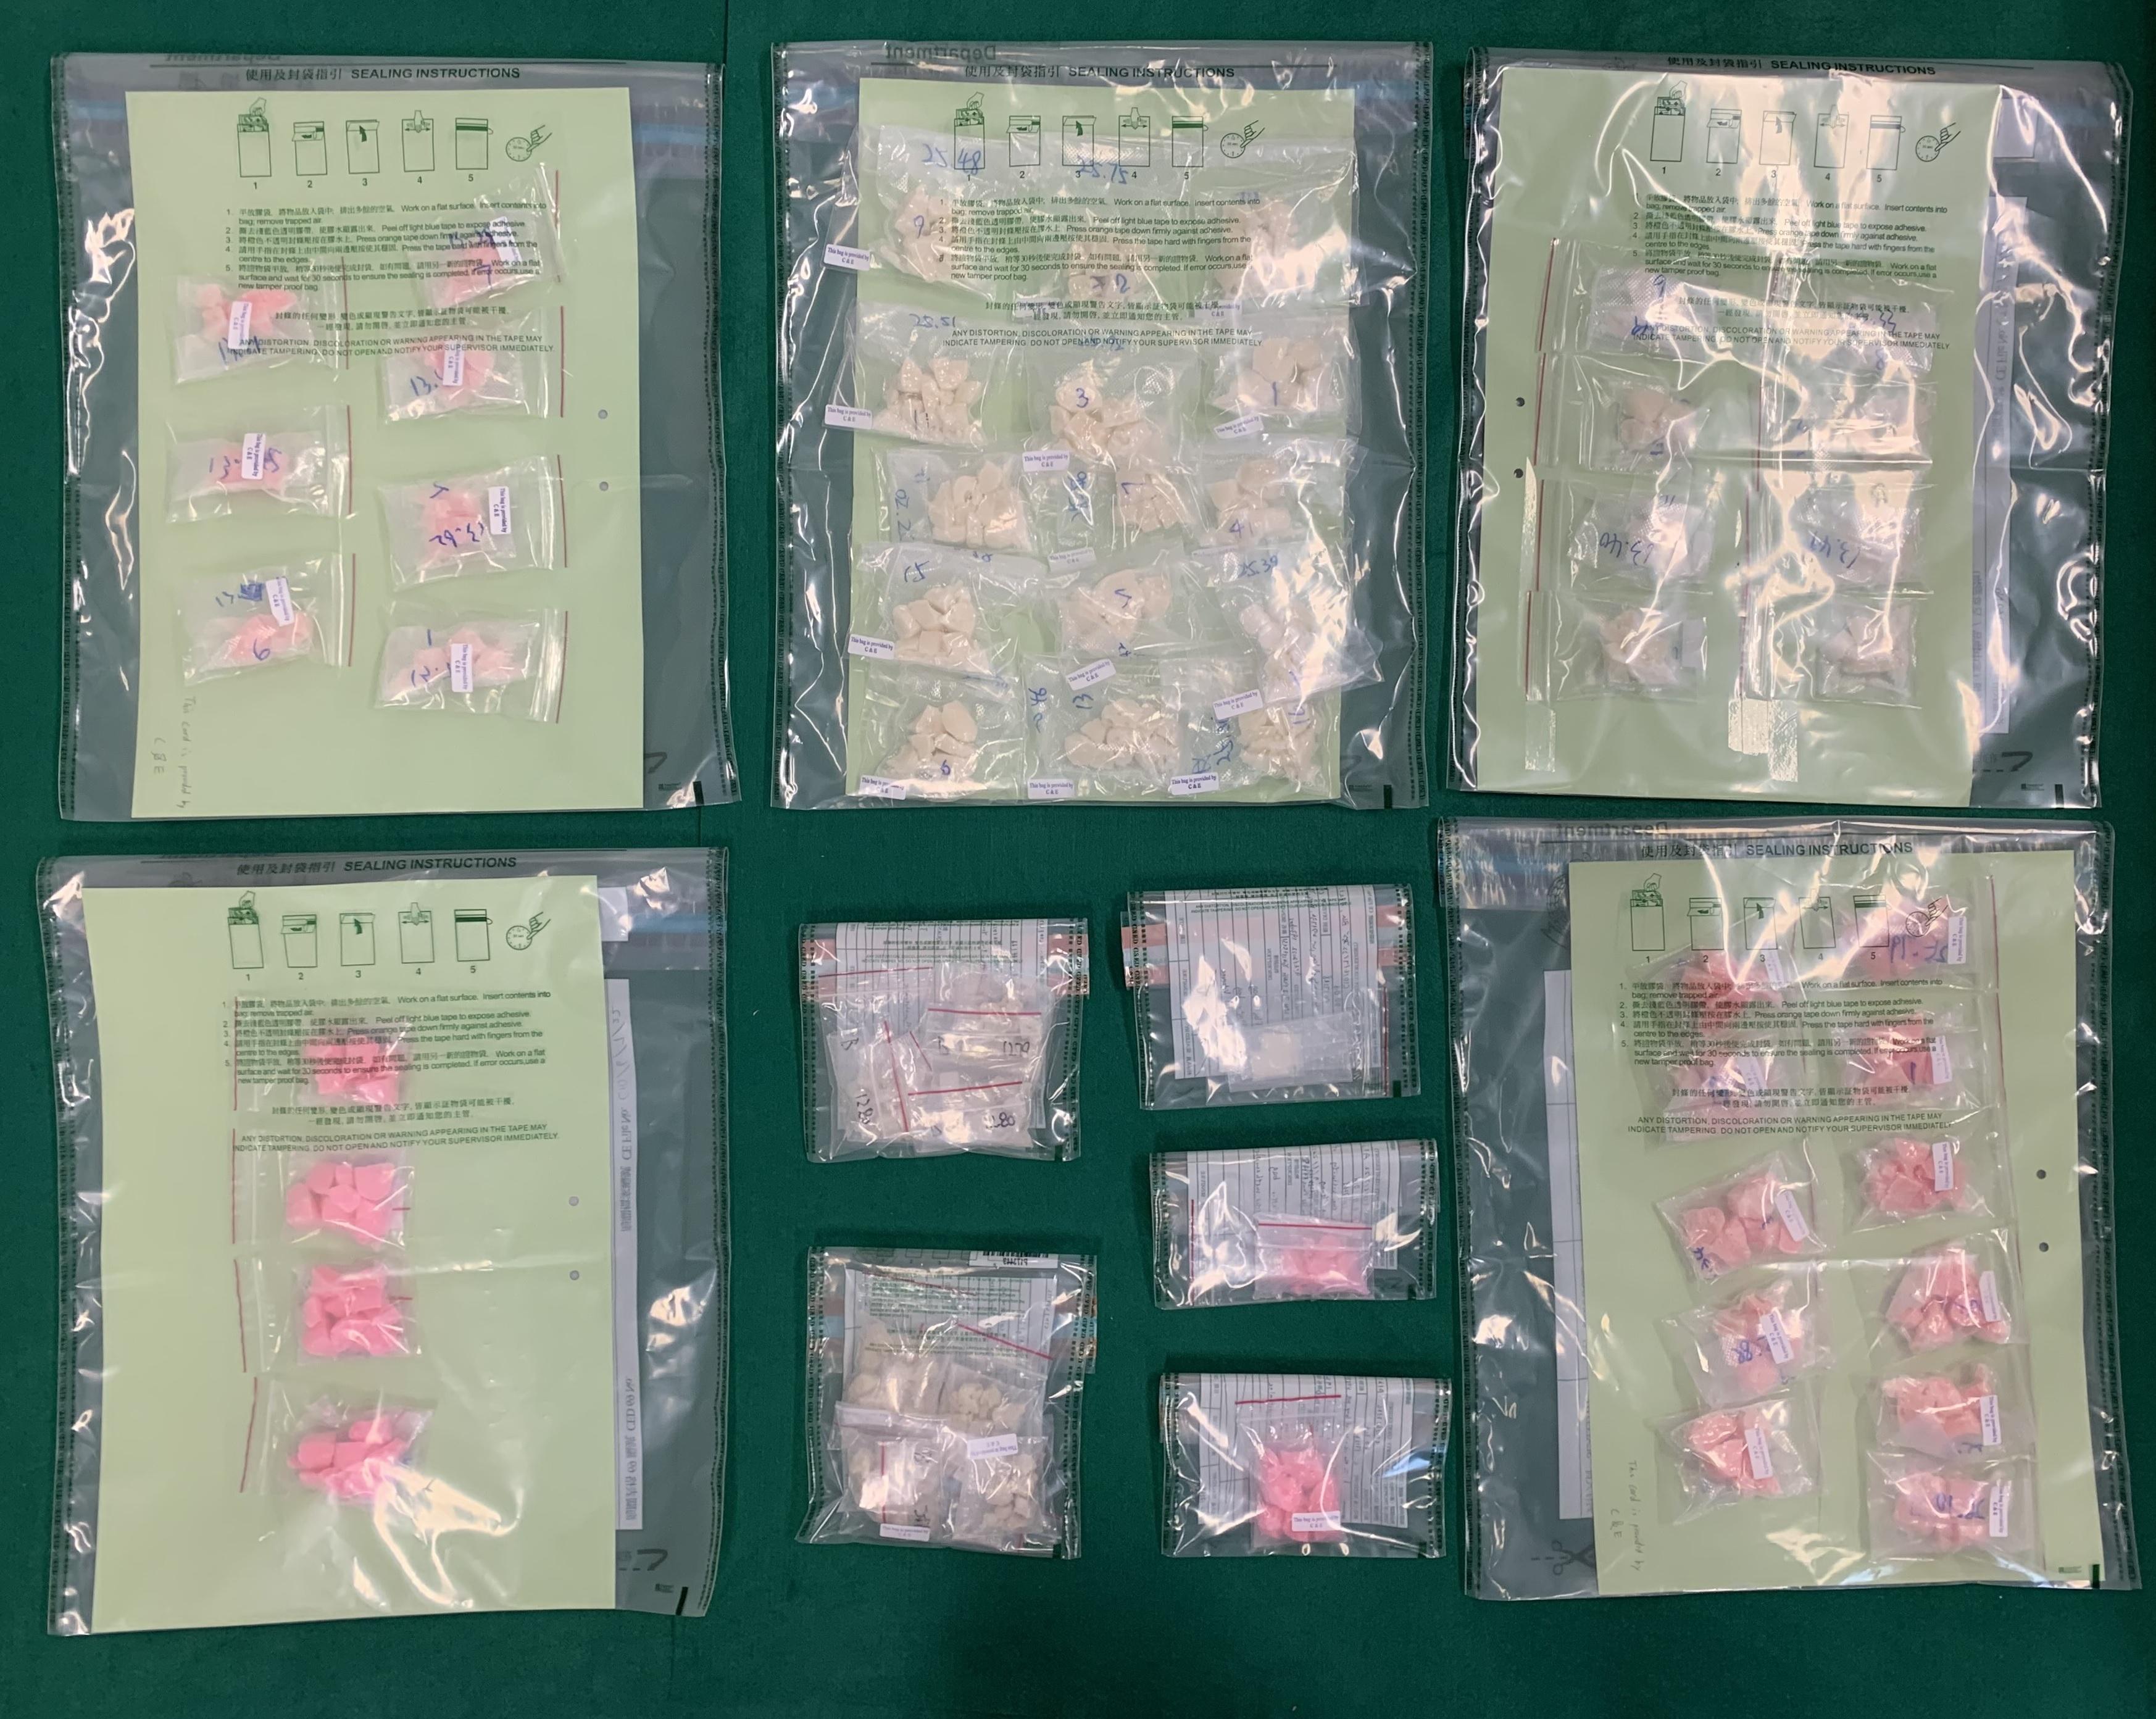 香港海關昨日（六月九日）在打鼓嶺檢獲約一點二公斤懷疑霹靂可卡因及約三克懷疑氯胺酮，估計市值共約一百八十萬元。圖示檢獲的懷疑毒品。